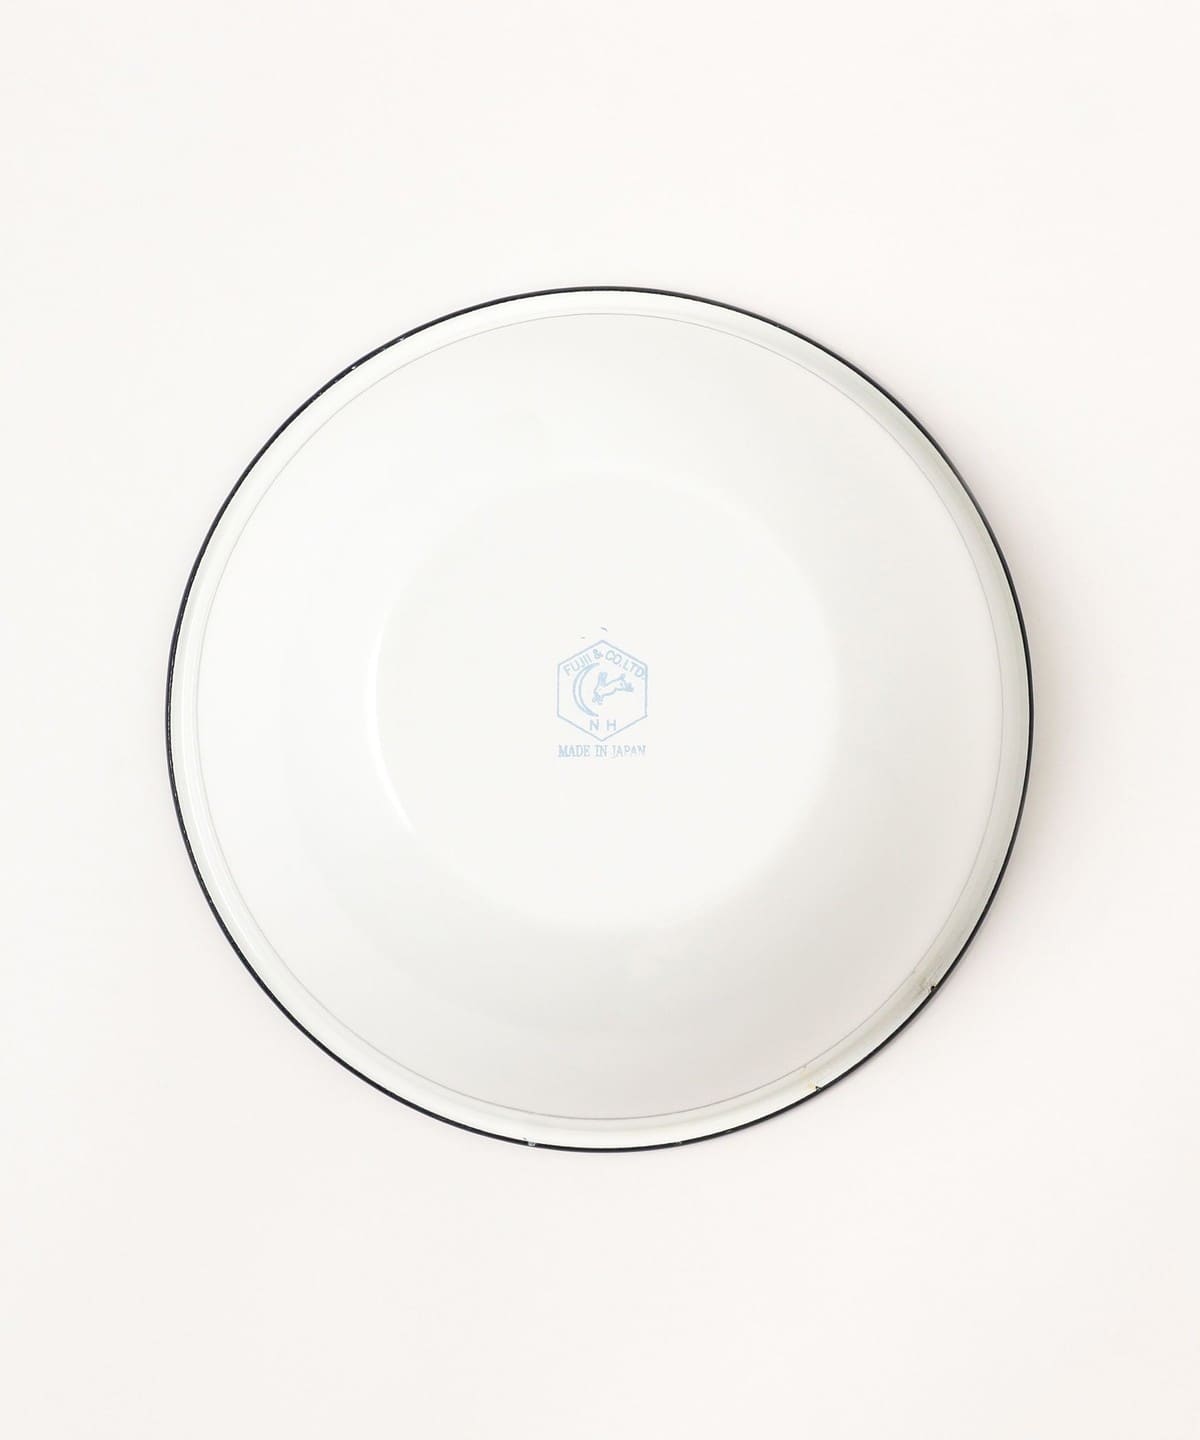 Tsuki Usagi White Enamel Bowl With Navy Blue Detailing – Japanese Taste